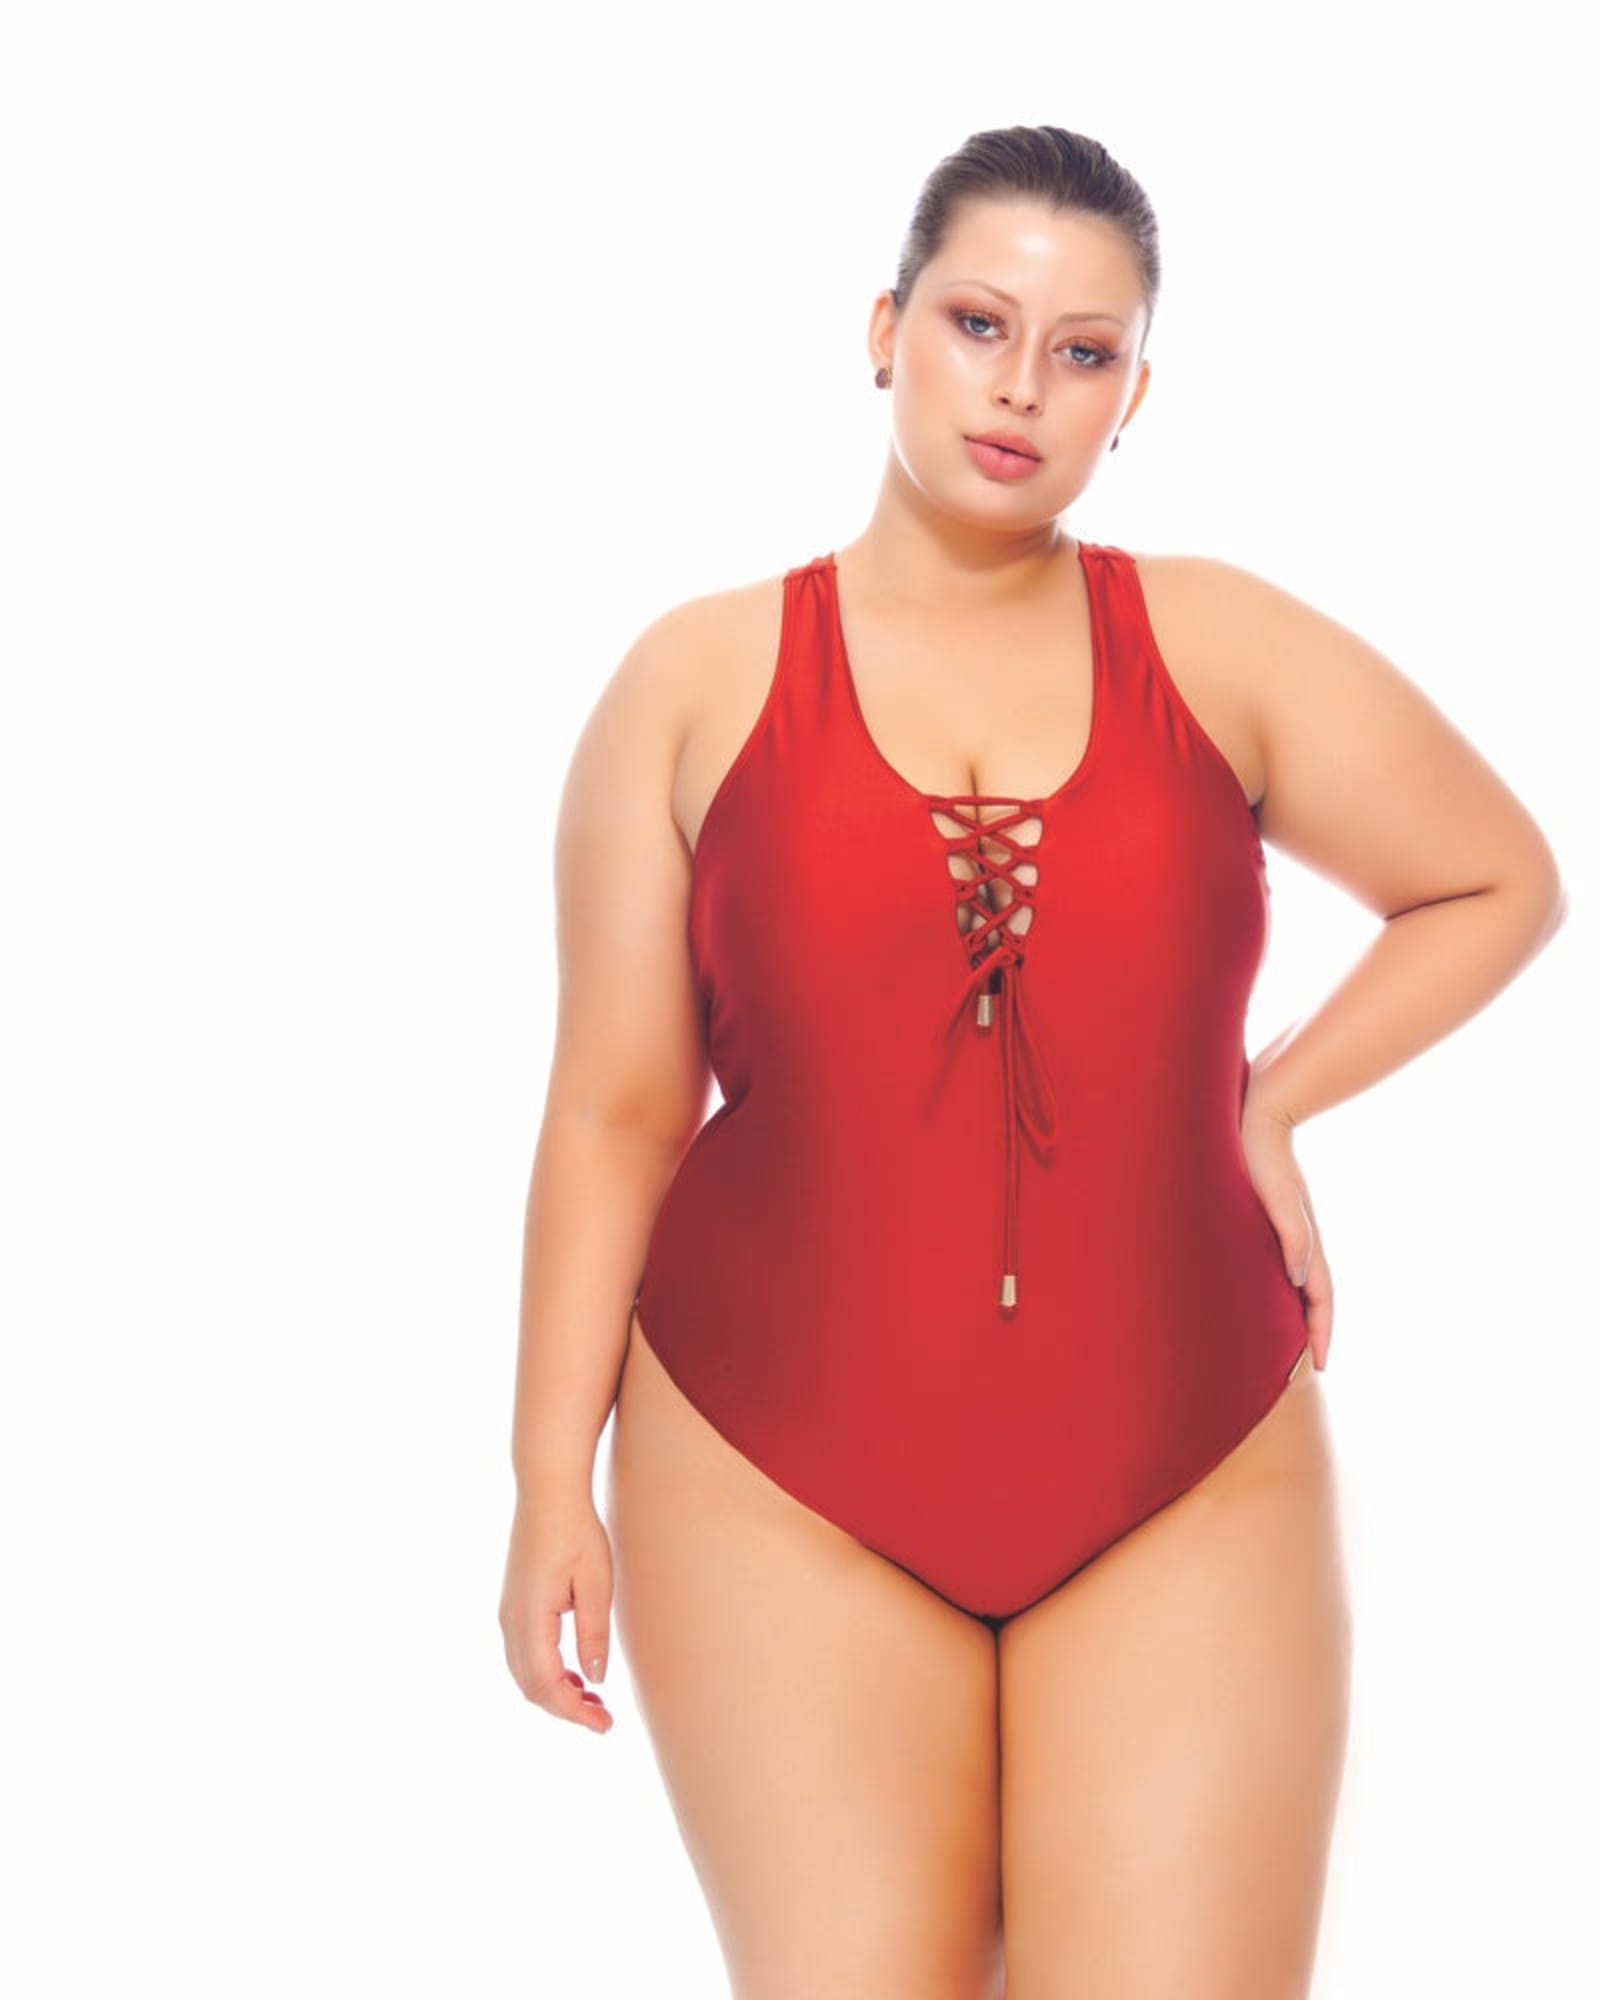 Women's New Padded Bra Plus Size One Piece Swimsuit Sweetheart Draped  Halter Monokini Swimwear Beachwear